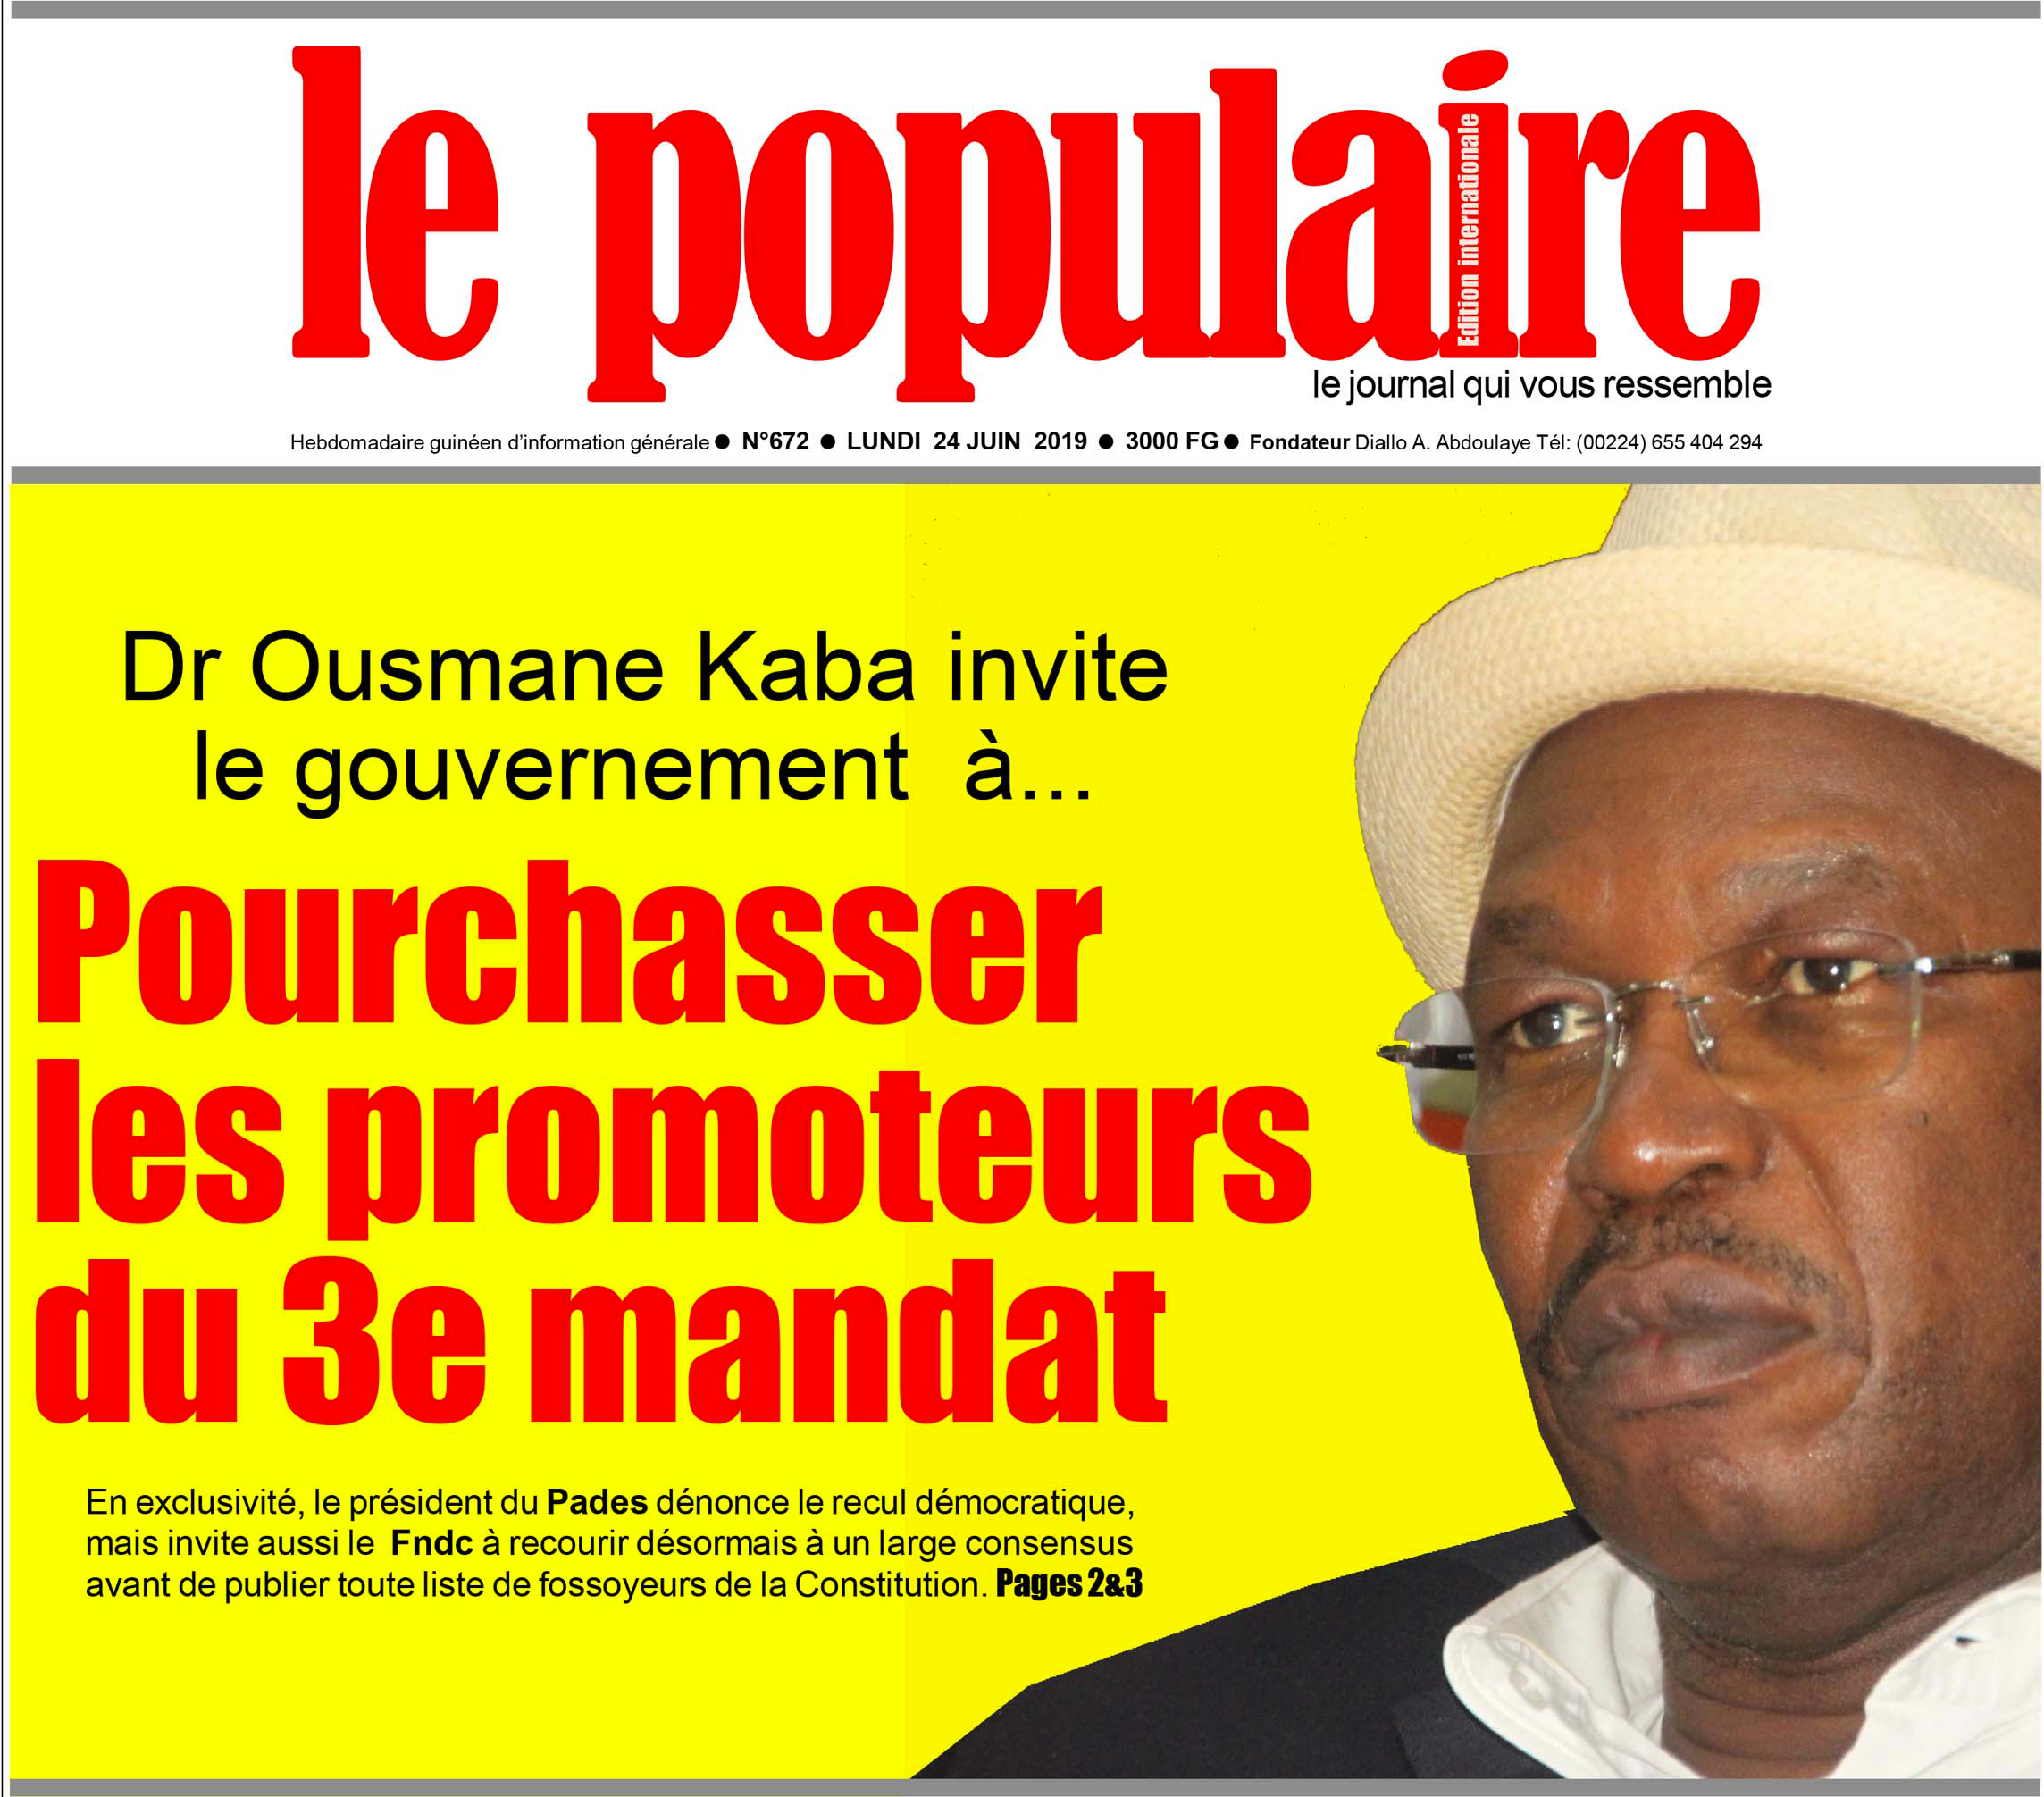 Le Populaire, le journal qui vous ressemble - Interview du Dr. Ousmane KABA